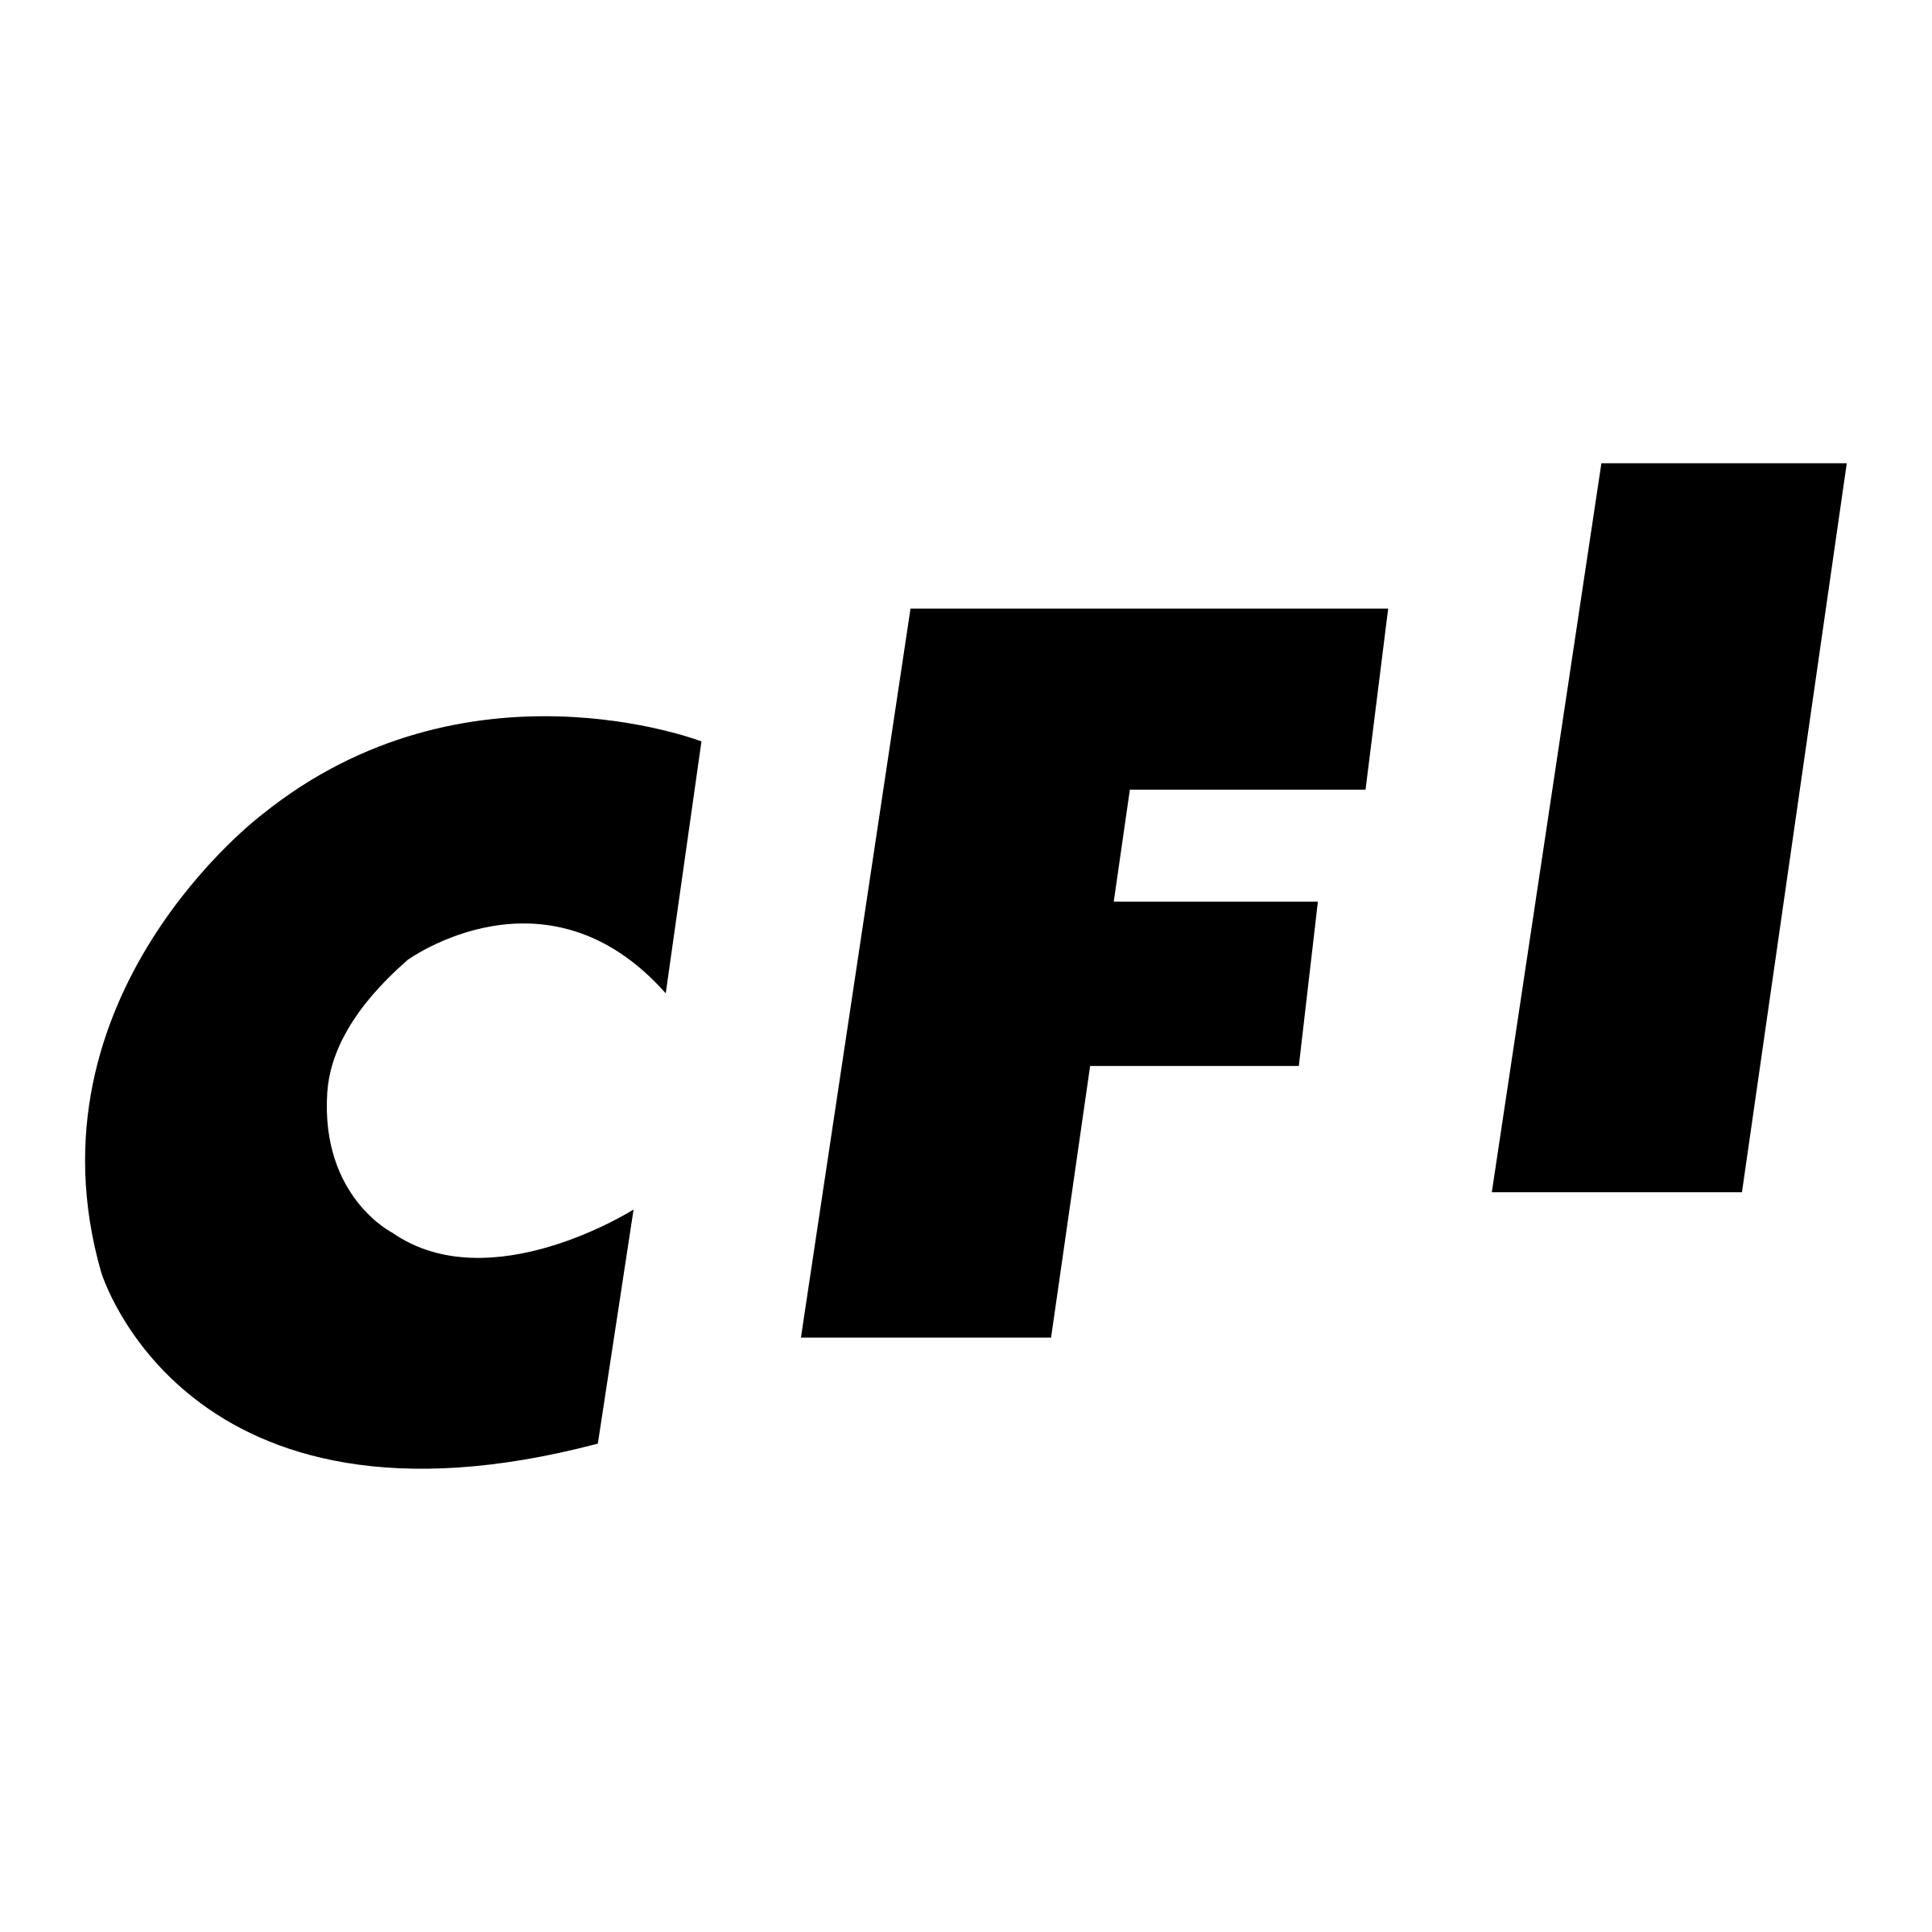 CFI Logo - CFI Logo PNG Transparent & SVG Vector